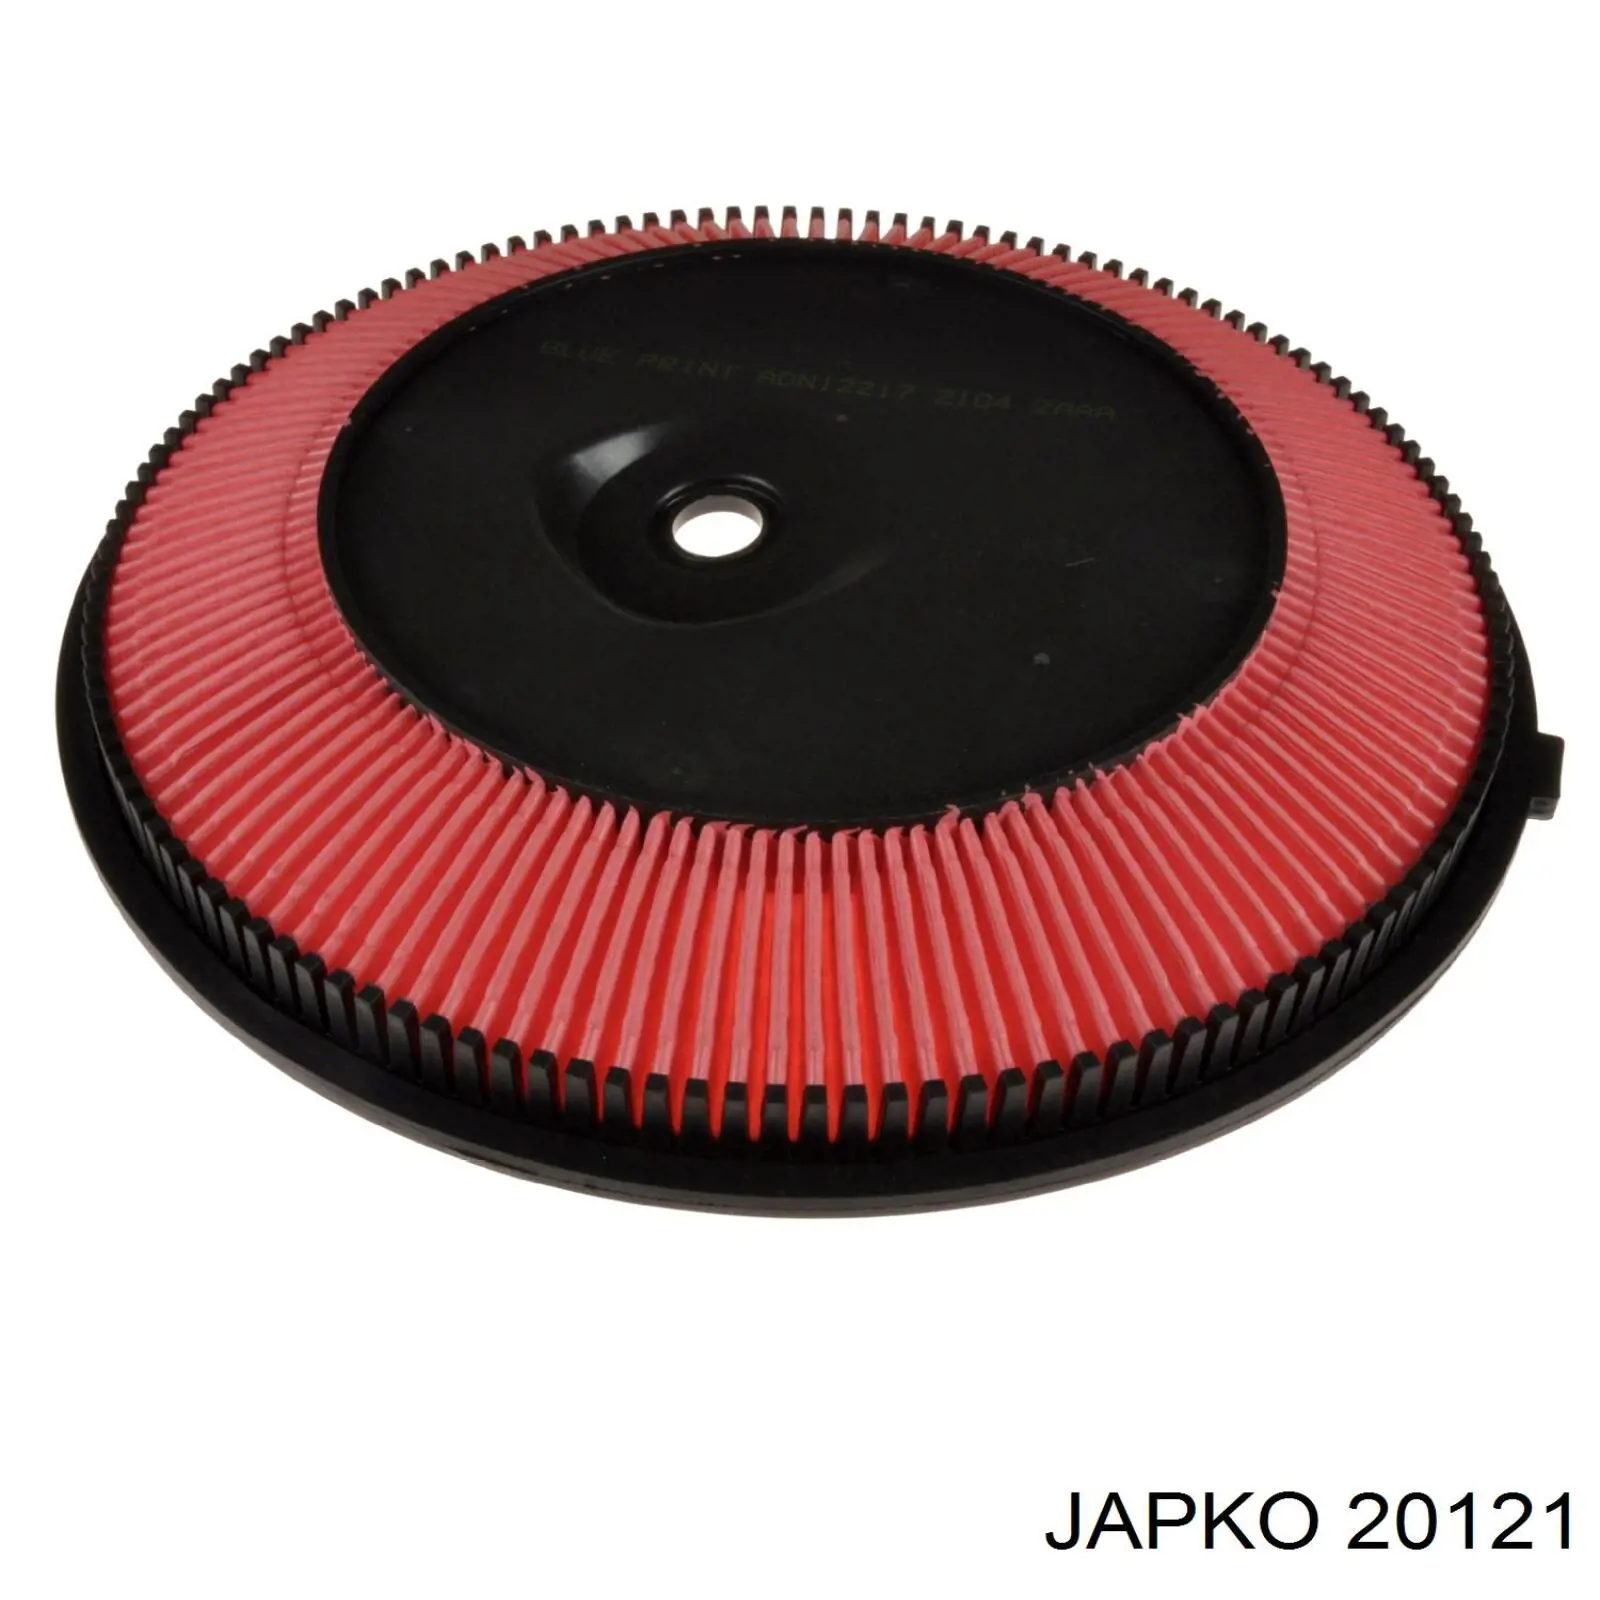 20121 Japko filtro de aire